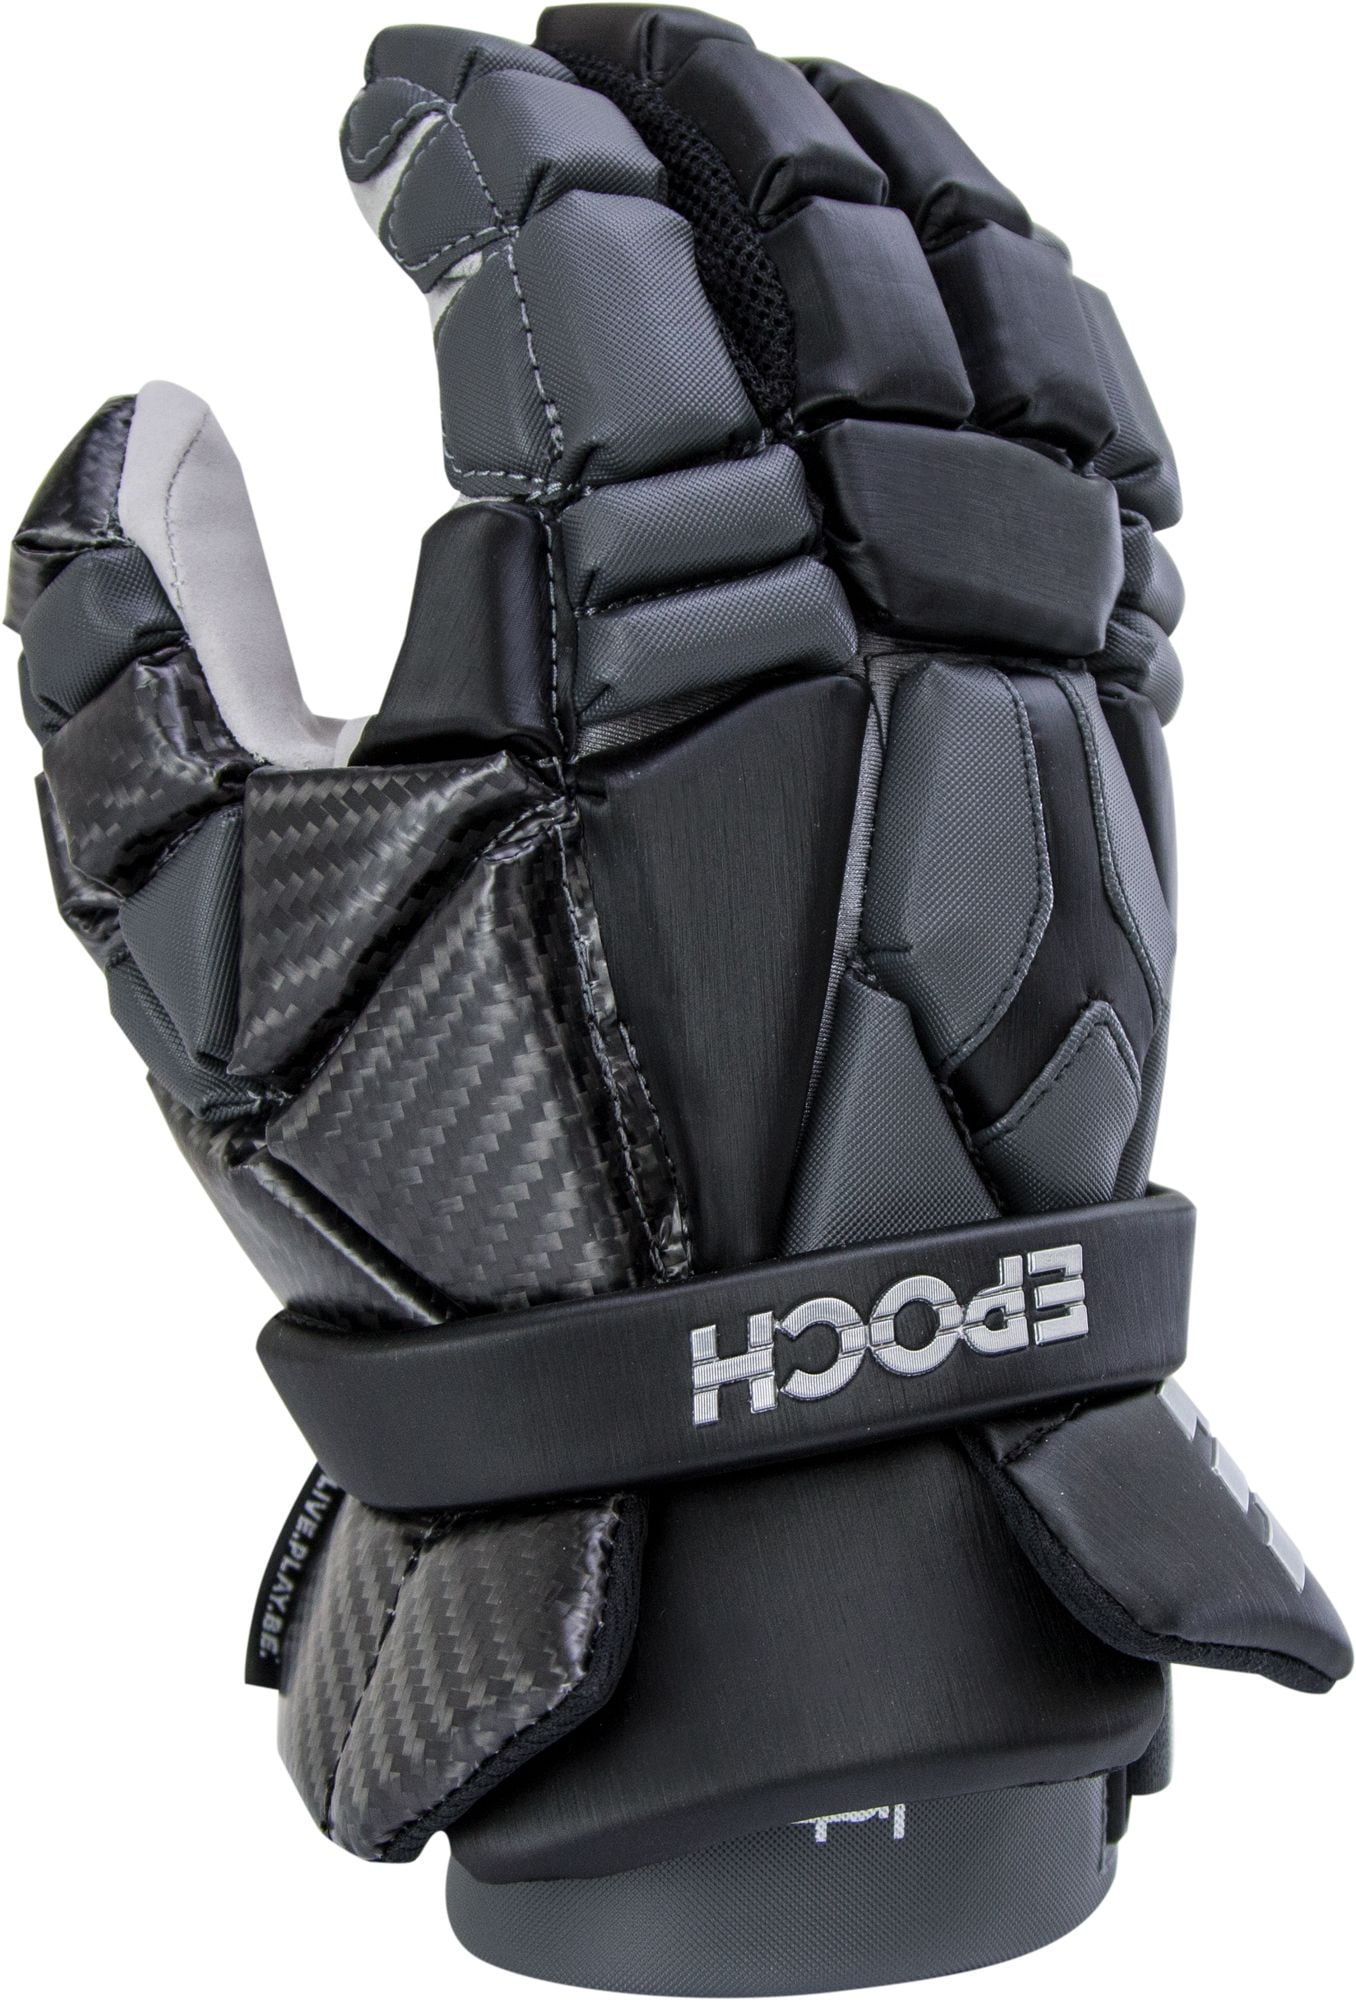 Epoch Men's Integra Lacrosse Gloves